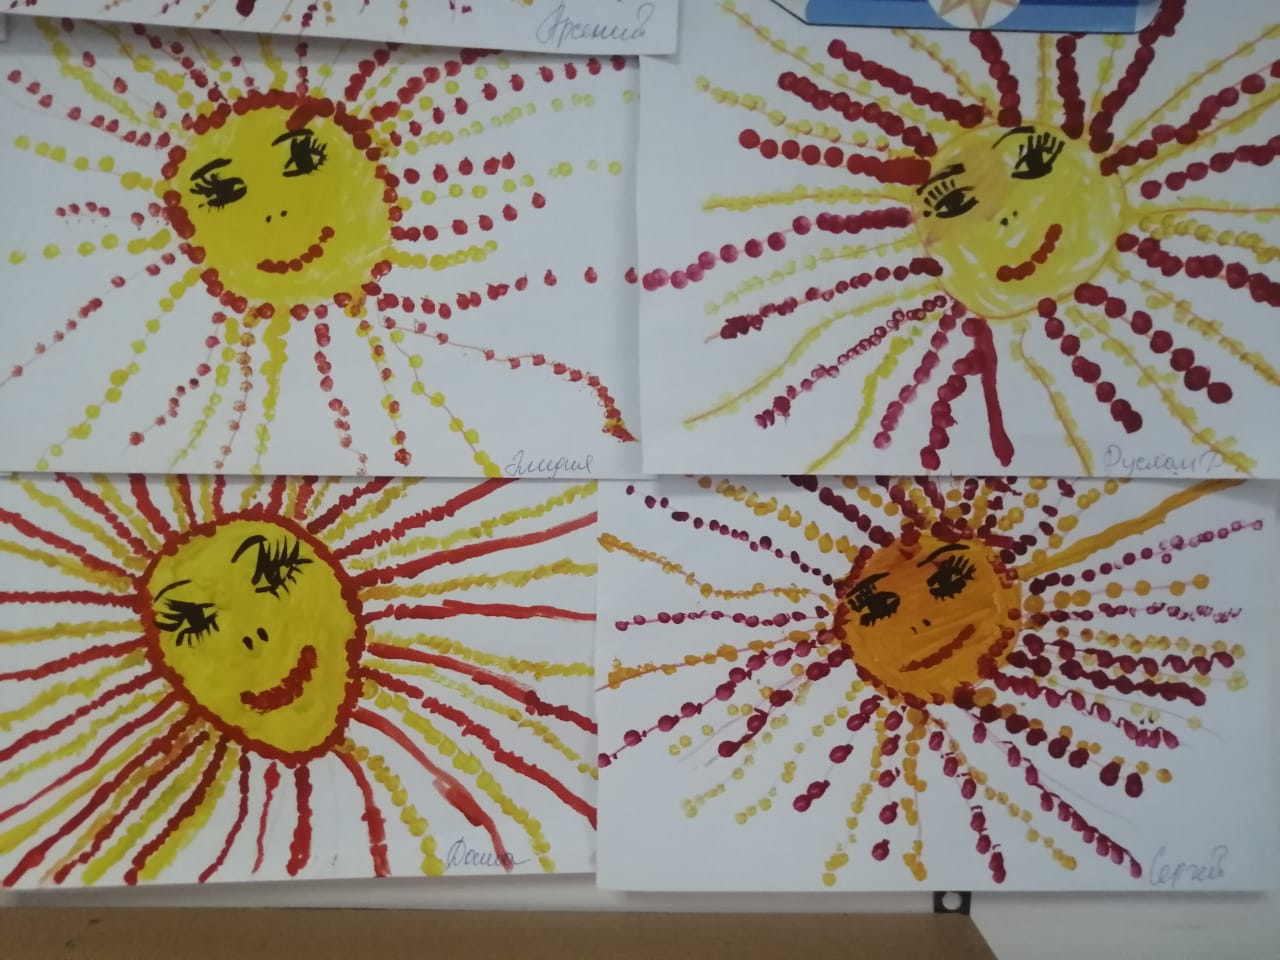 Рисование солнышко средняя группа конспект